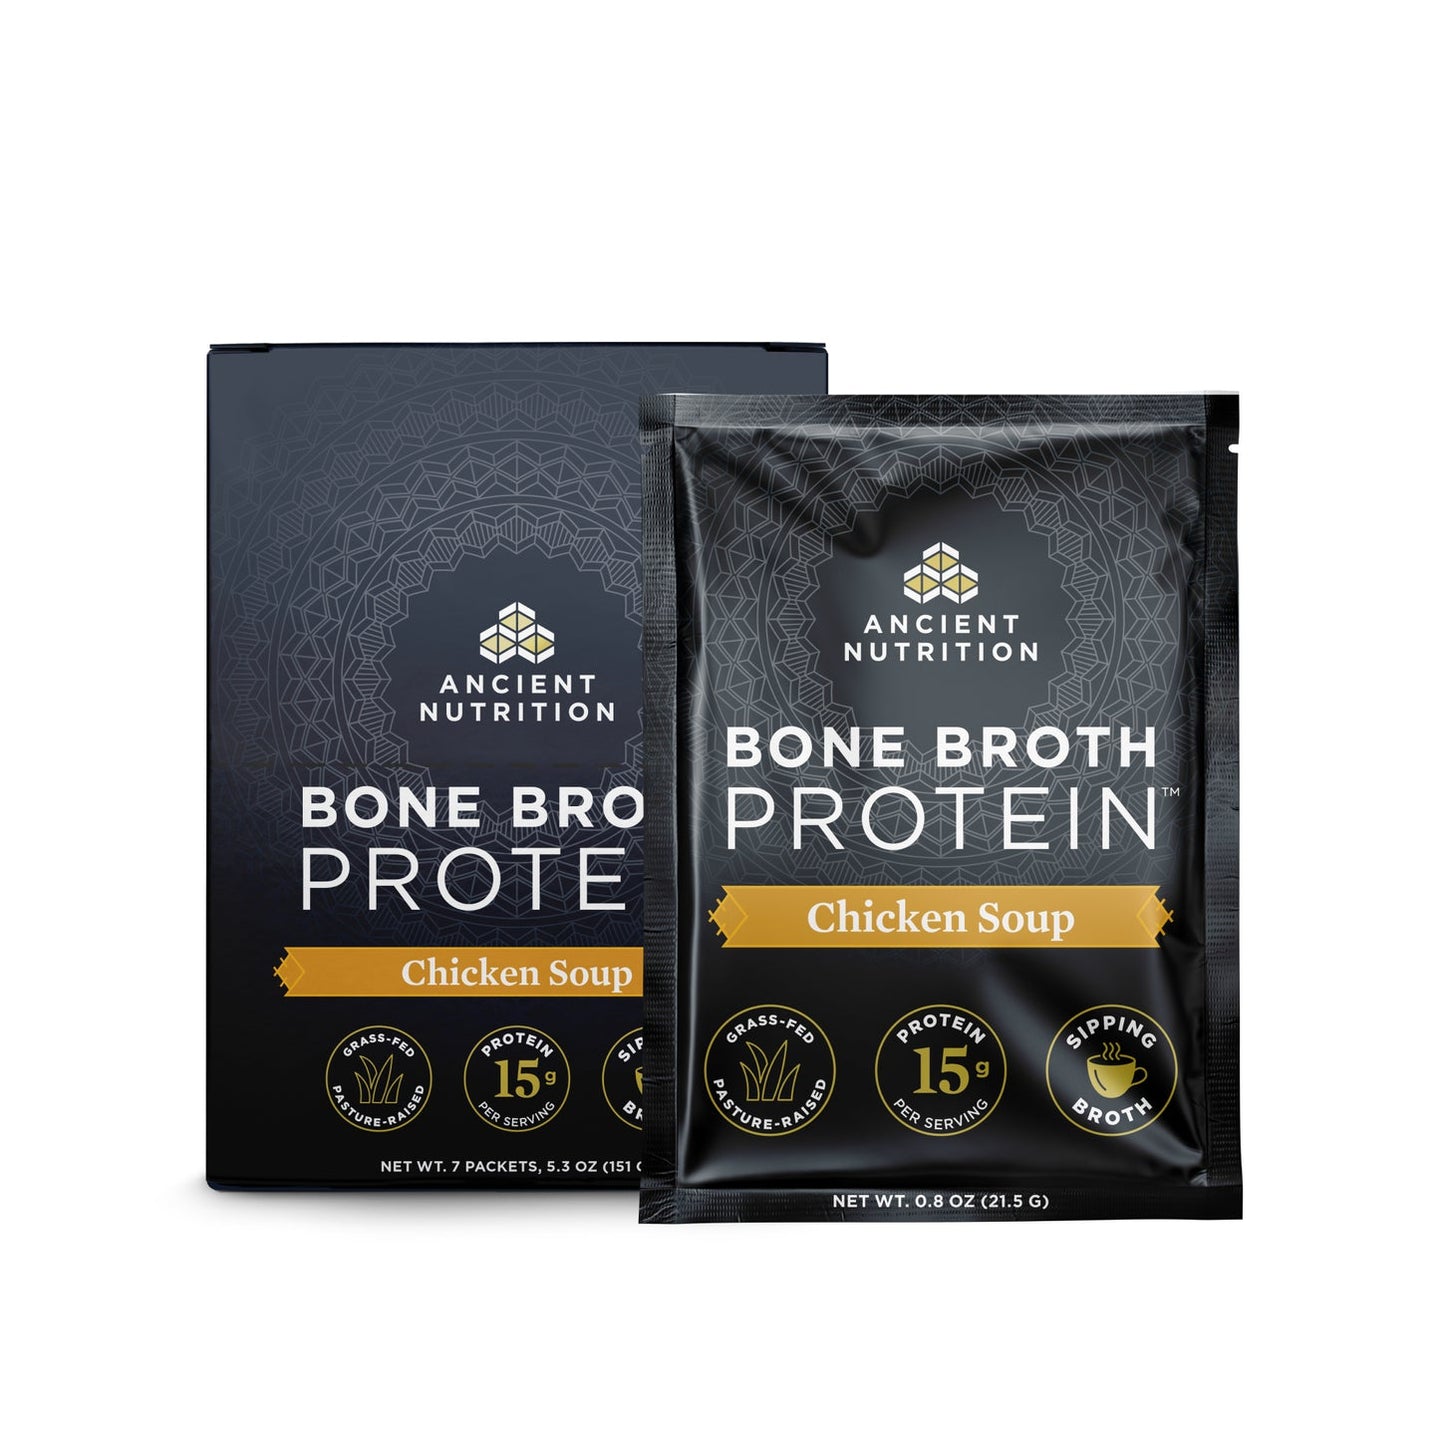 Bone Broth Protein - Chicken Soup